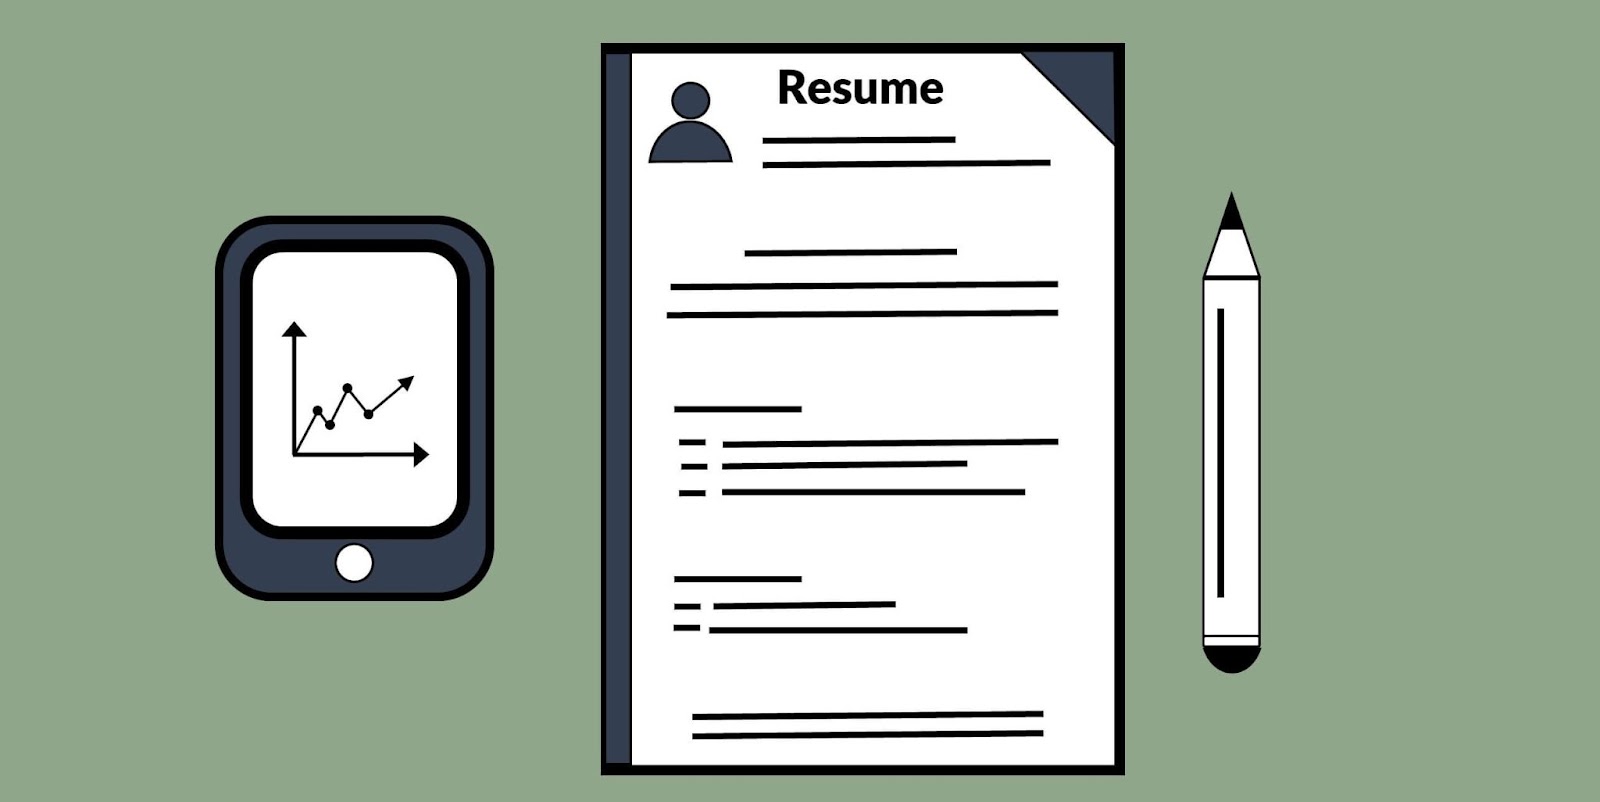 Resume là gì? Sự khác nhau giữa CV và Resume mà bạn cần biết